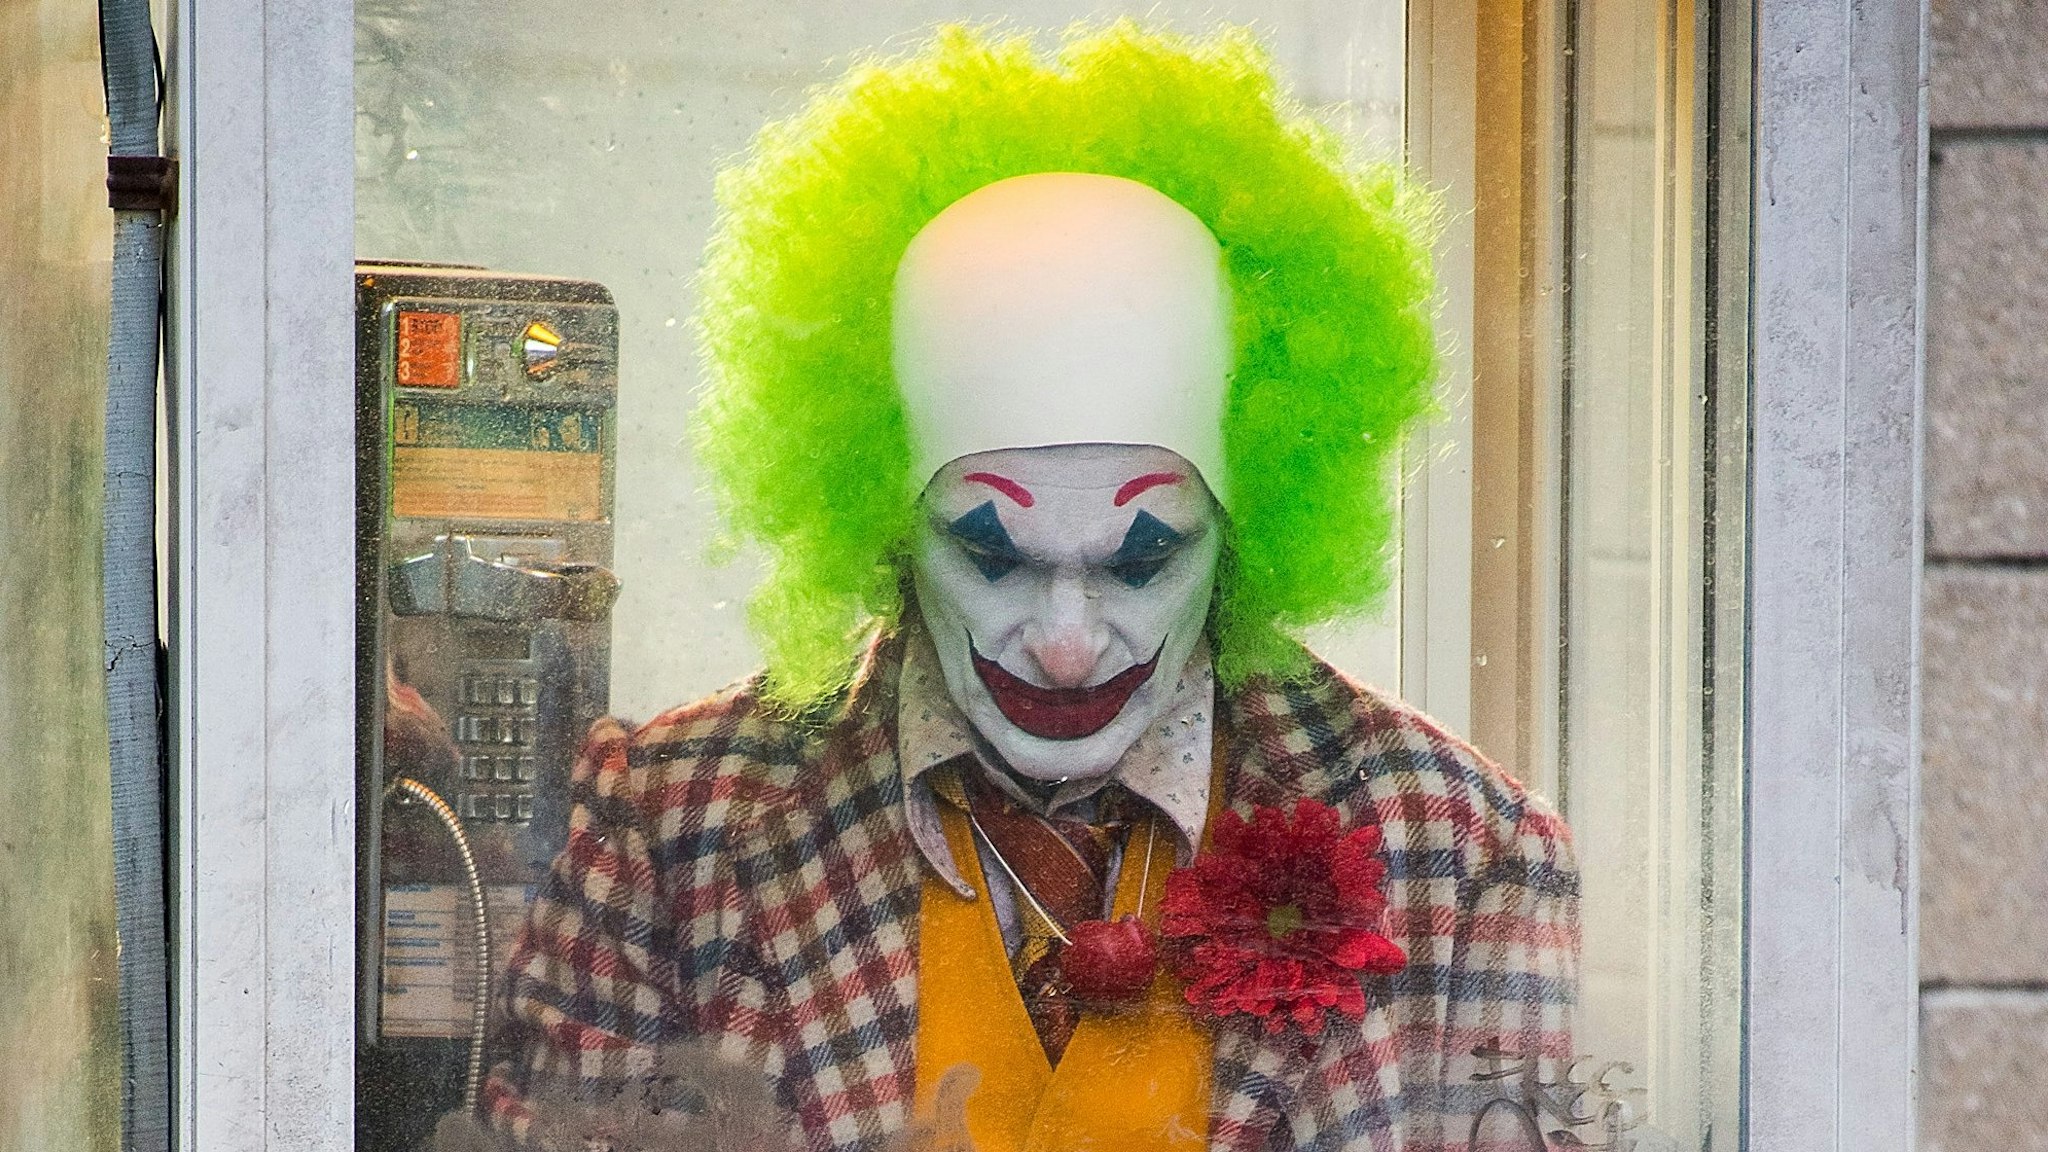 Joaquin Phoenix is seen filming a scene for 'Joker' in Brooklyn on September 24, 2018 in New York City.